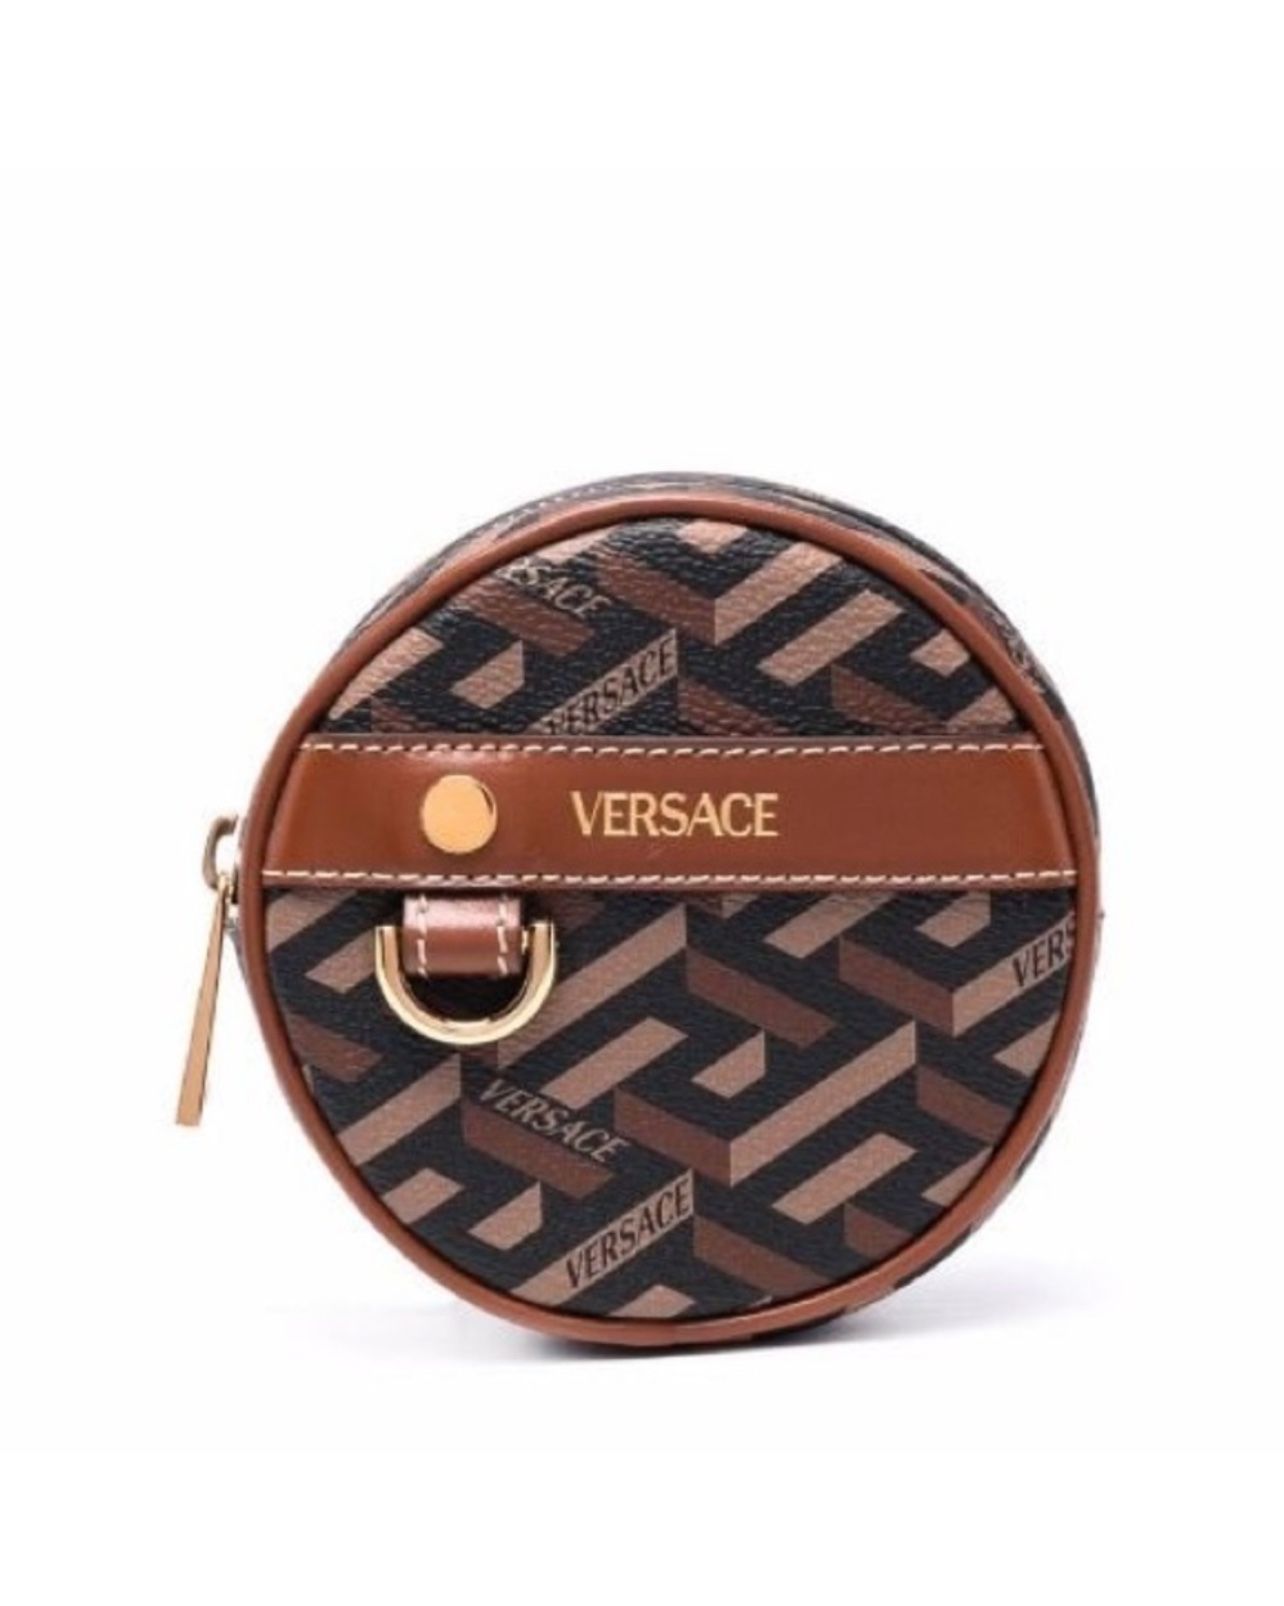 SALE!!! Versace La Greca leather logo coin pouch / belt bag NWB